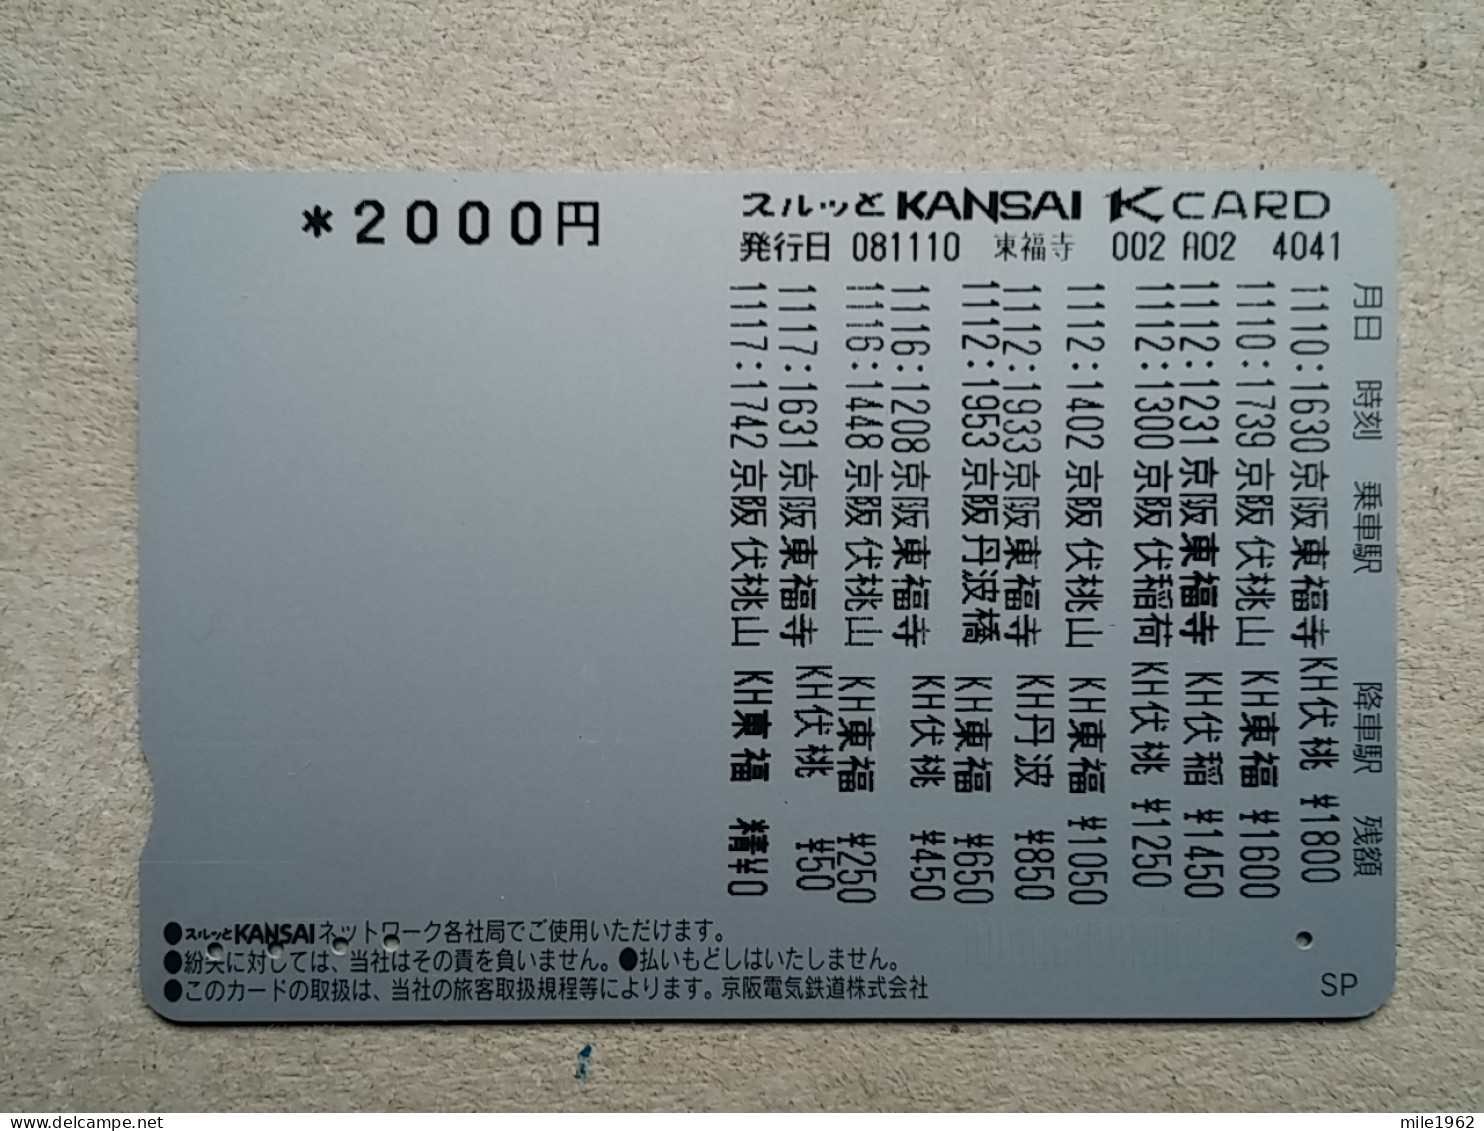 T-612 - JAPAN, Japon, Nipon, Carte Prepayee, Prepaid Card, CARD, RAILWAY, TRAIN, CHEMIN DE FER - Trains